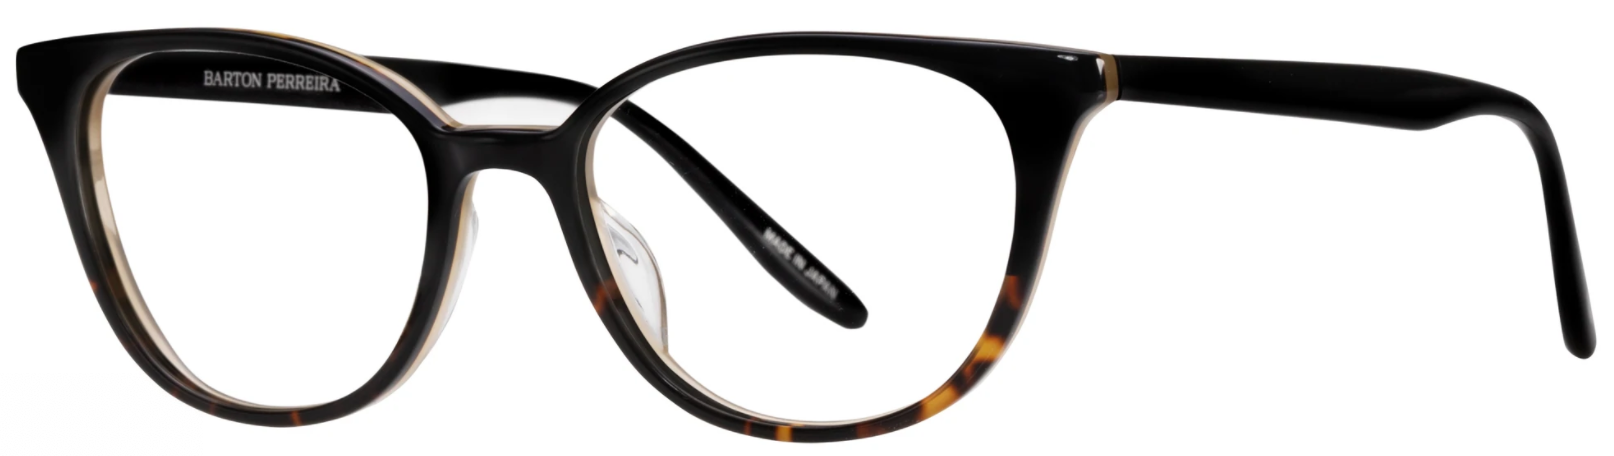 Alexander Daas - Barton Perreira Elise Eyeglasses - Black Tortoise Gradient - Side View